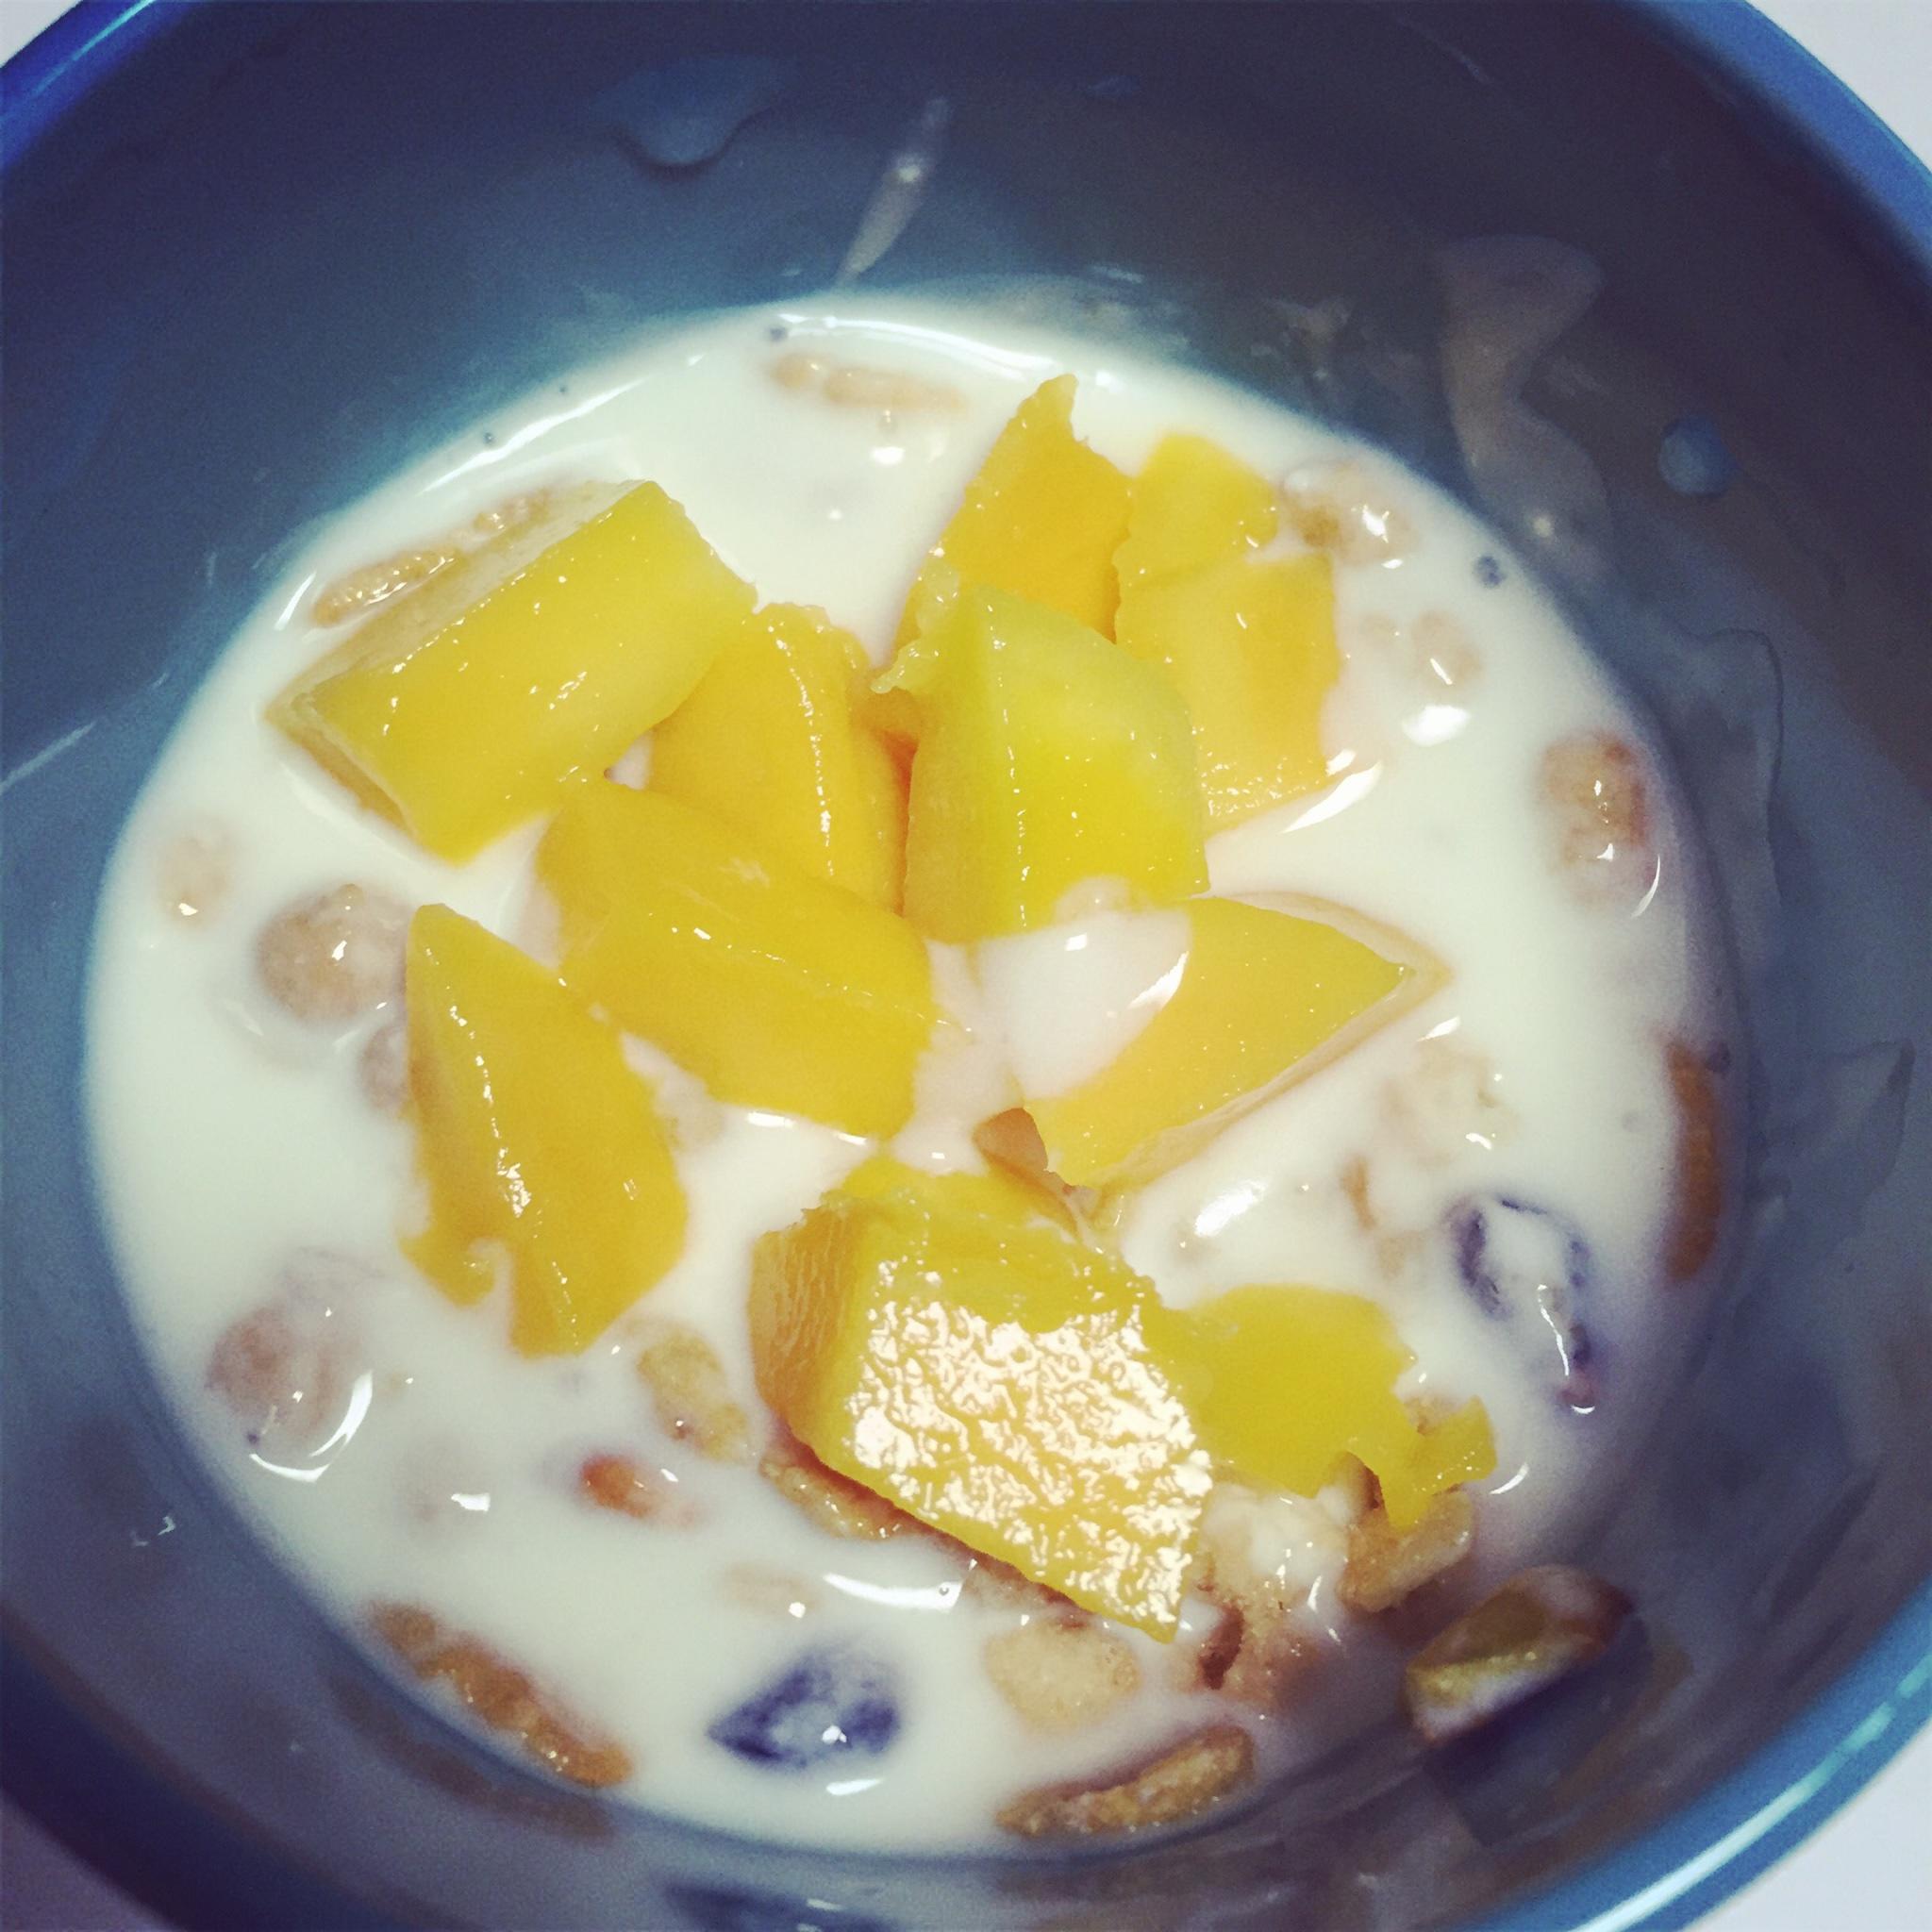 元气早餐-酸奶麦片✌(๑˃̶͈̀◡˂̶͈́๑)✌的做法